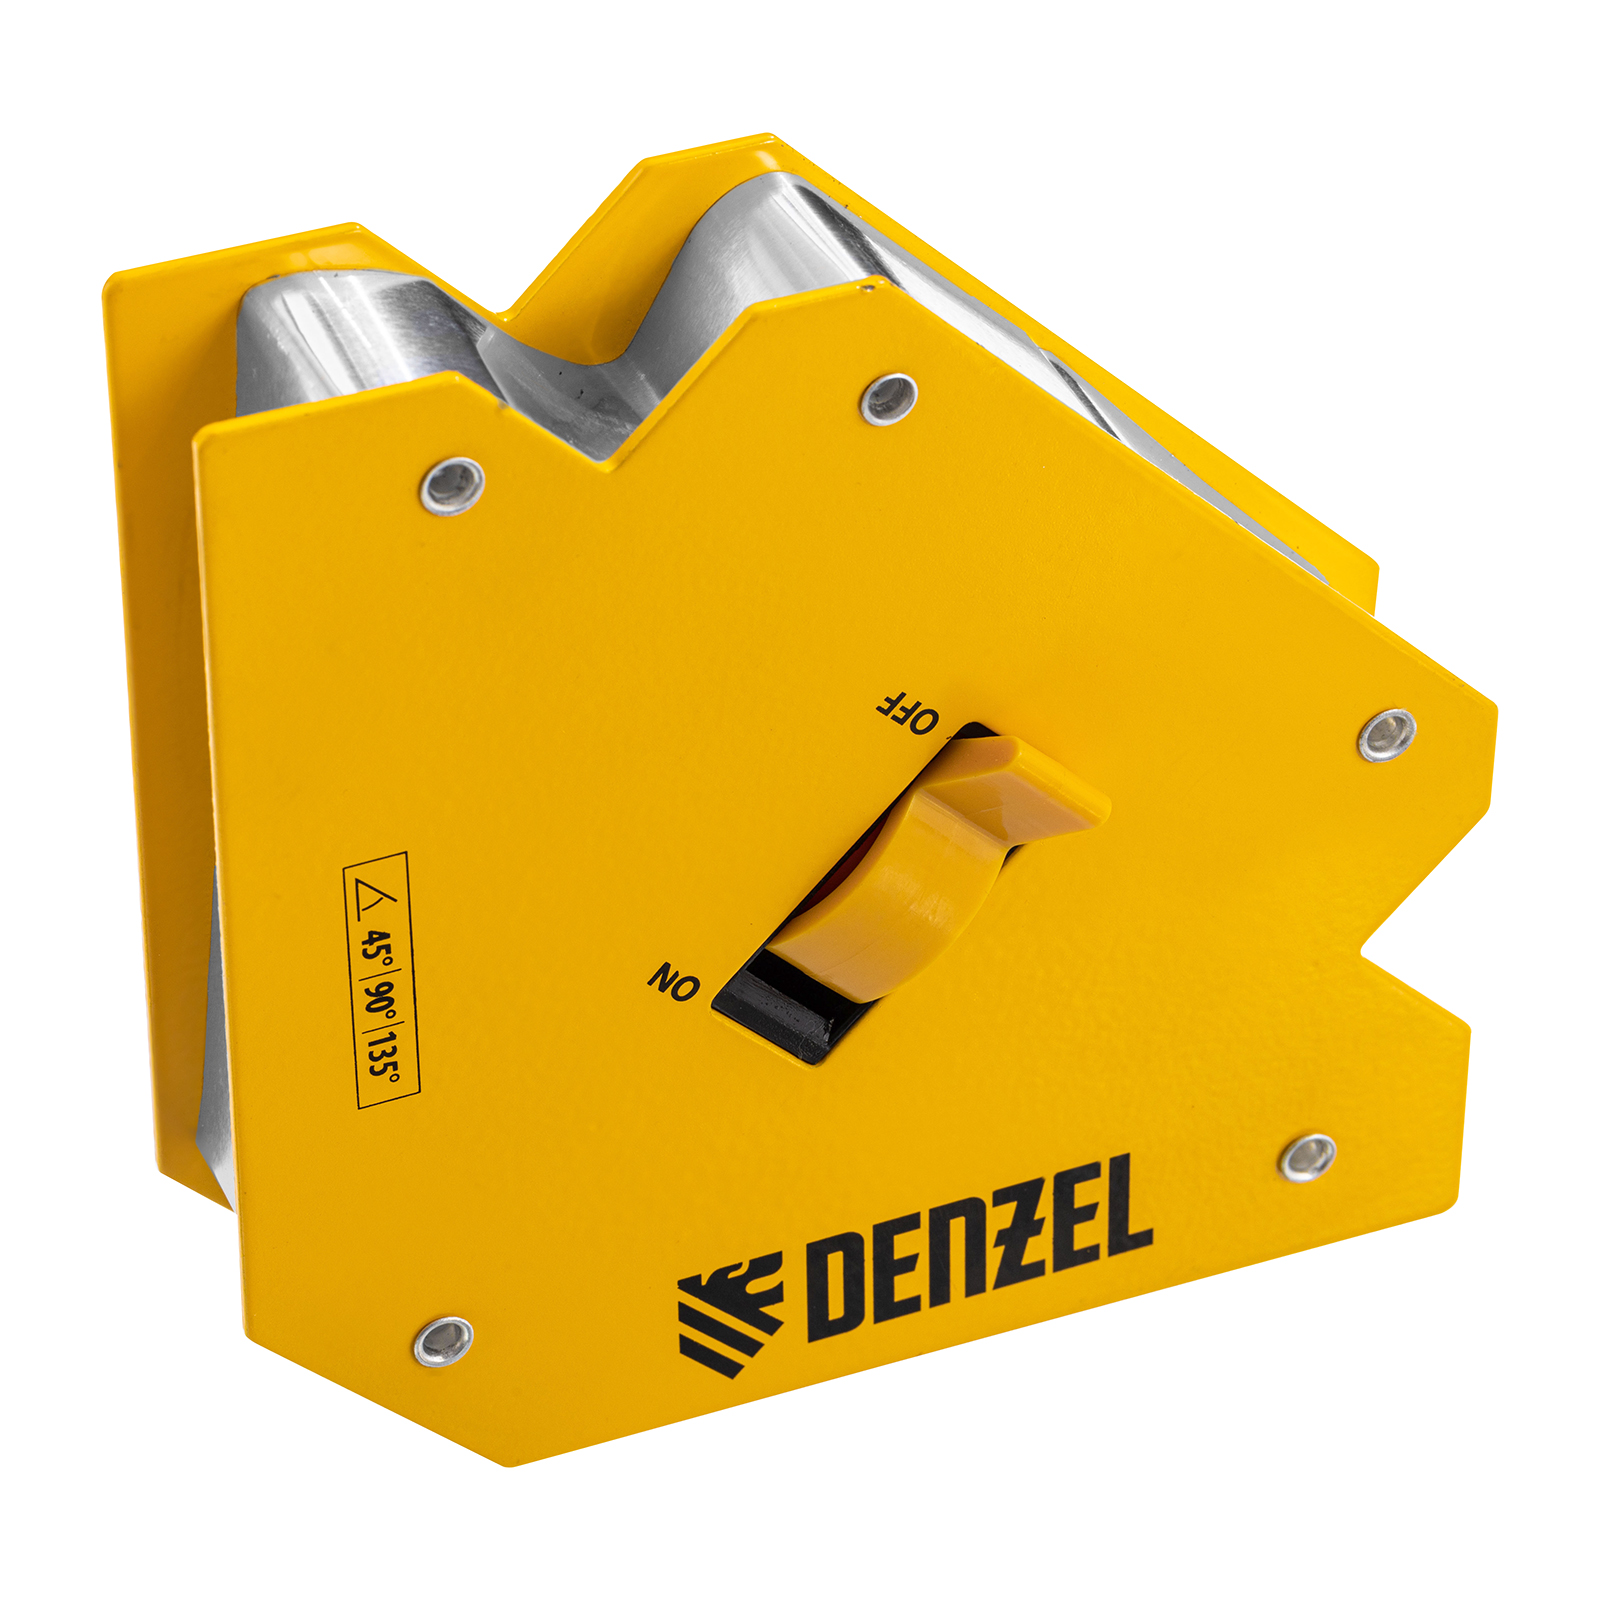 Фиксатор магнитный отключаемый для сварочных работ DENZEL усилие 55 LB, 45х90х135 гр 97564 фиксатор магнитный для сварочных работ beorol